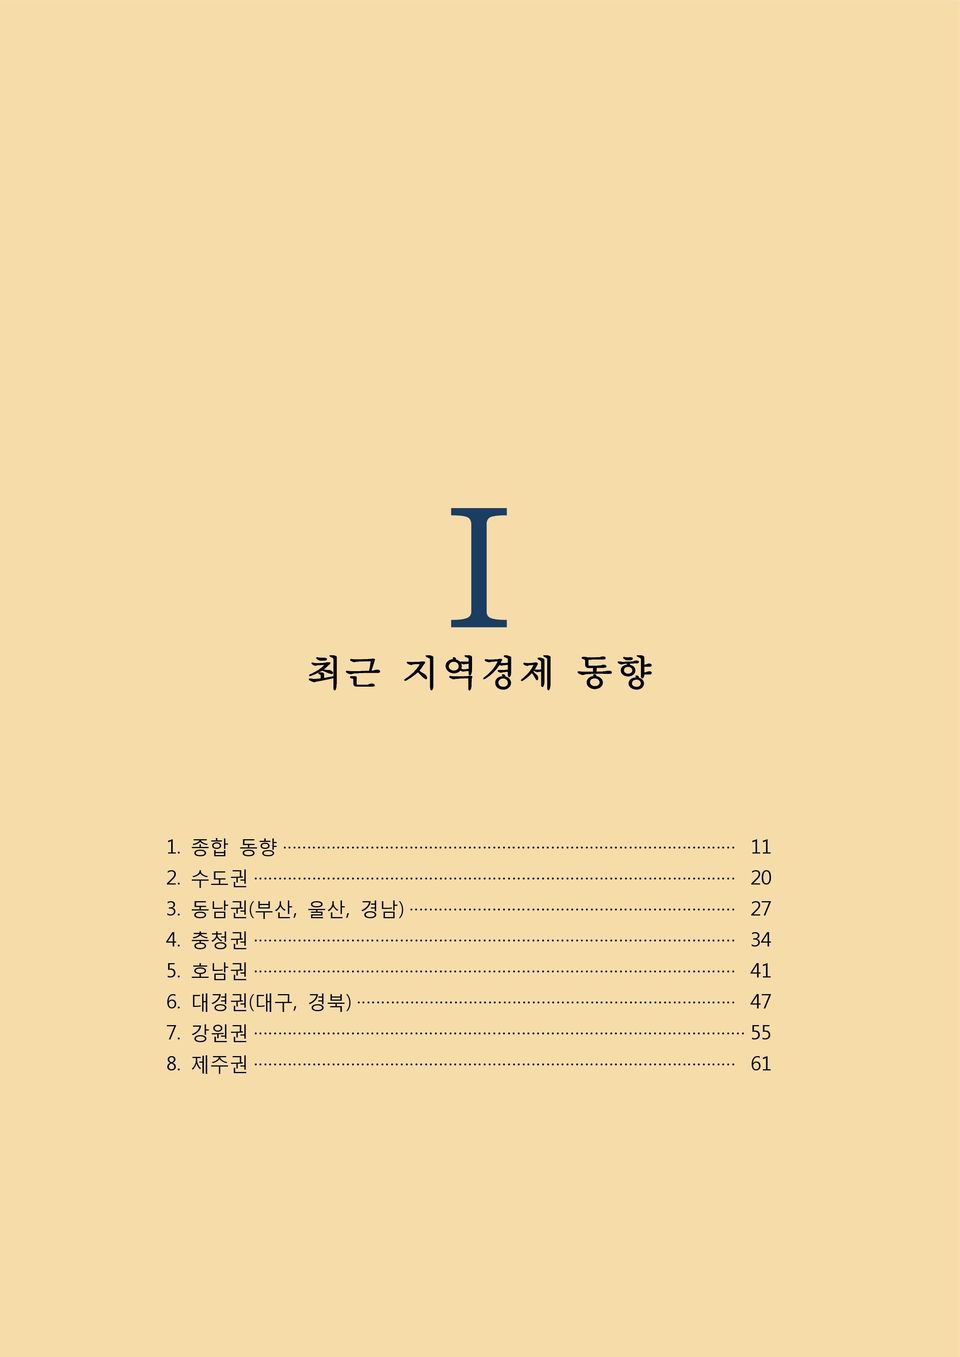 동남권(부산, 울산, 경남) 27 4.